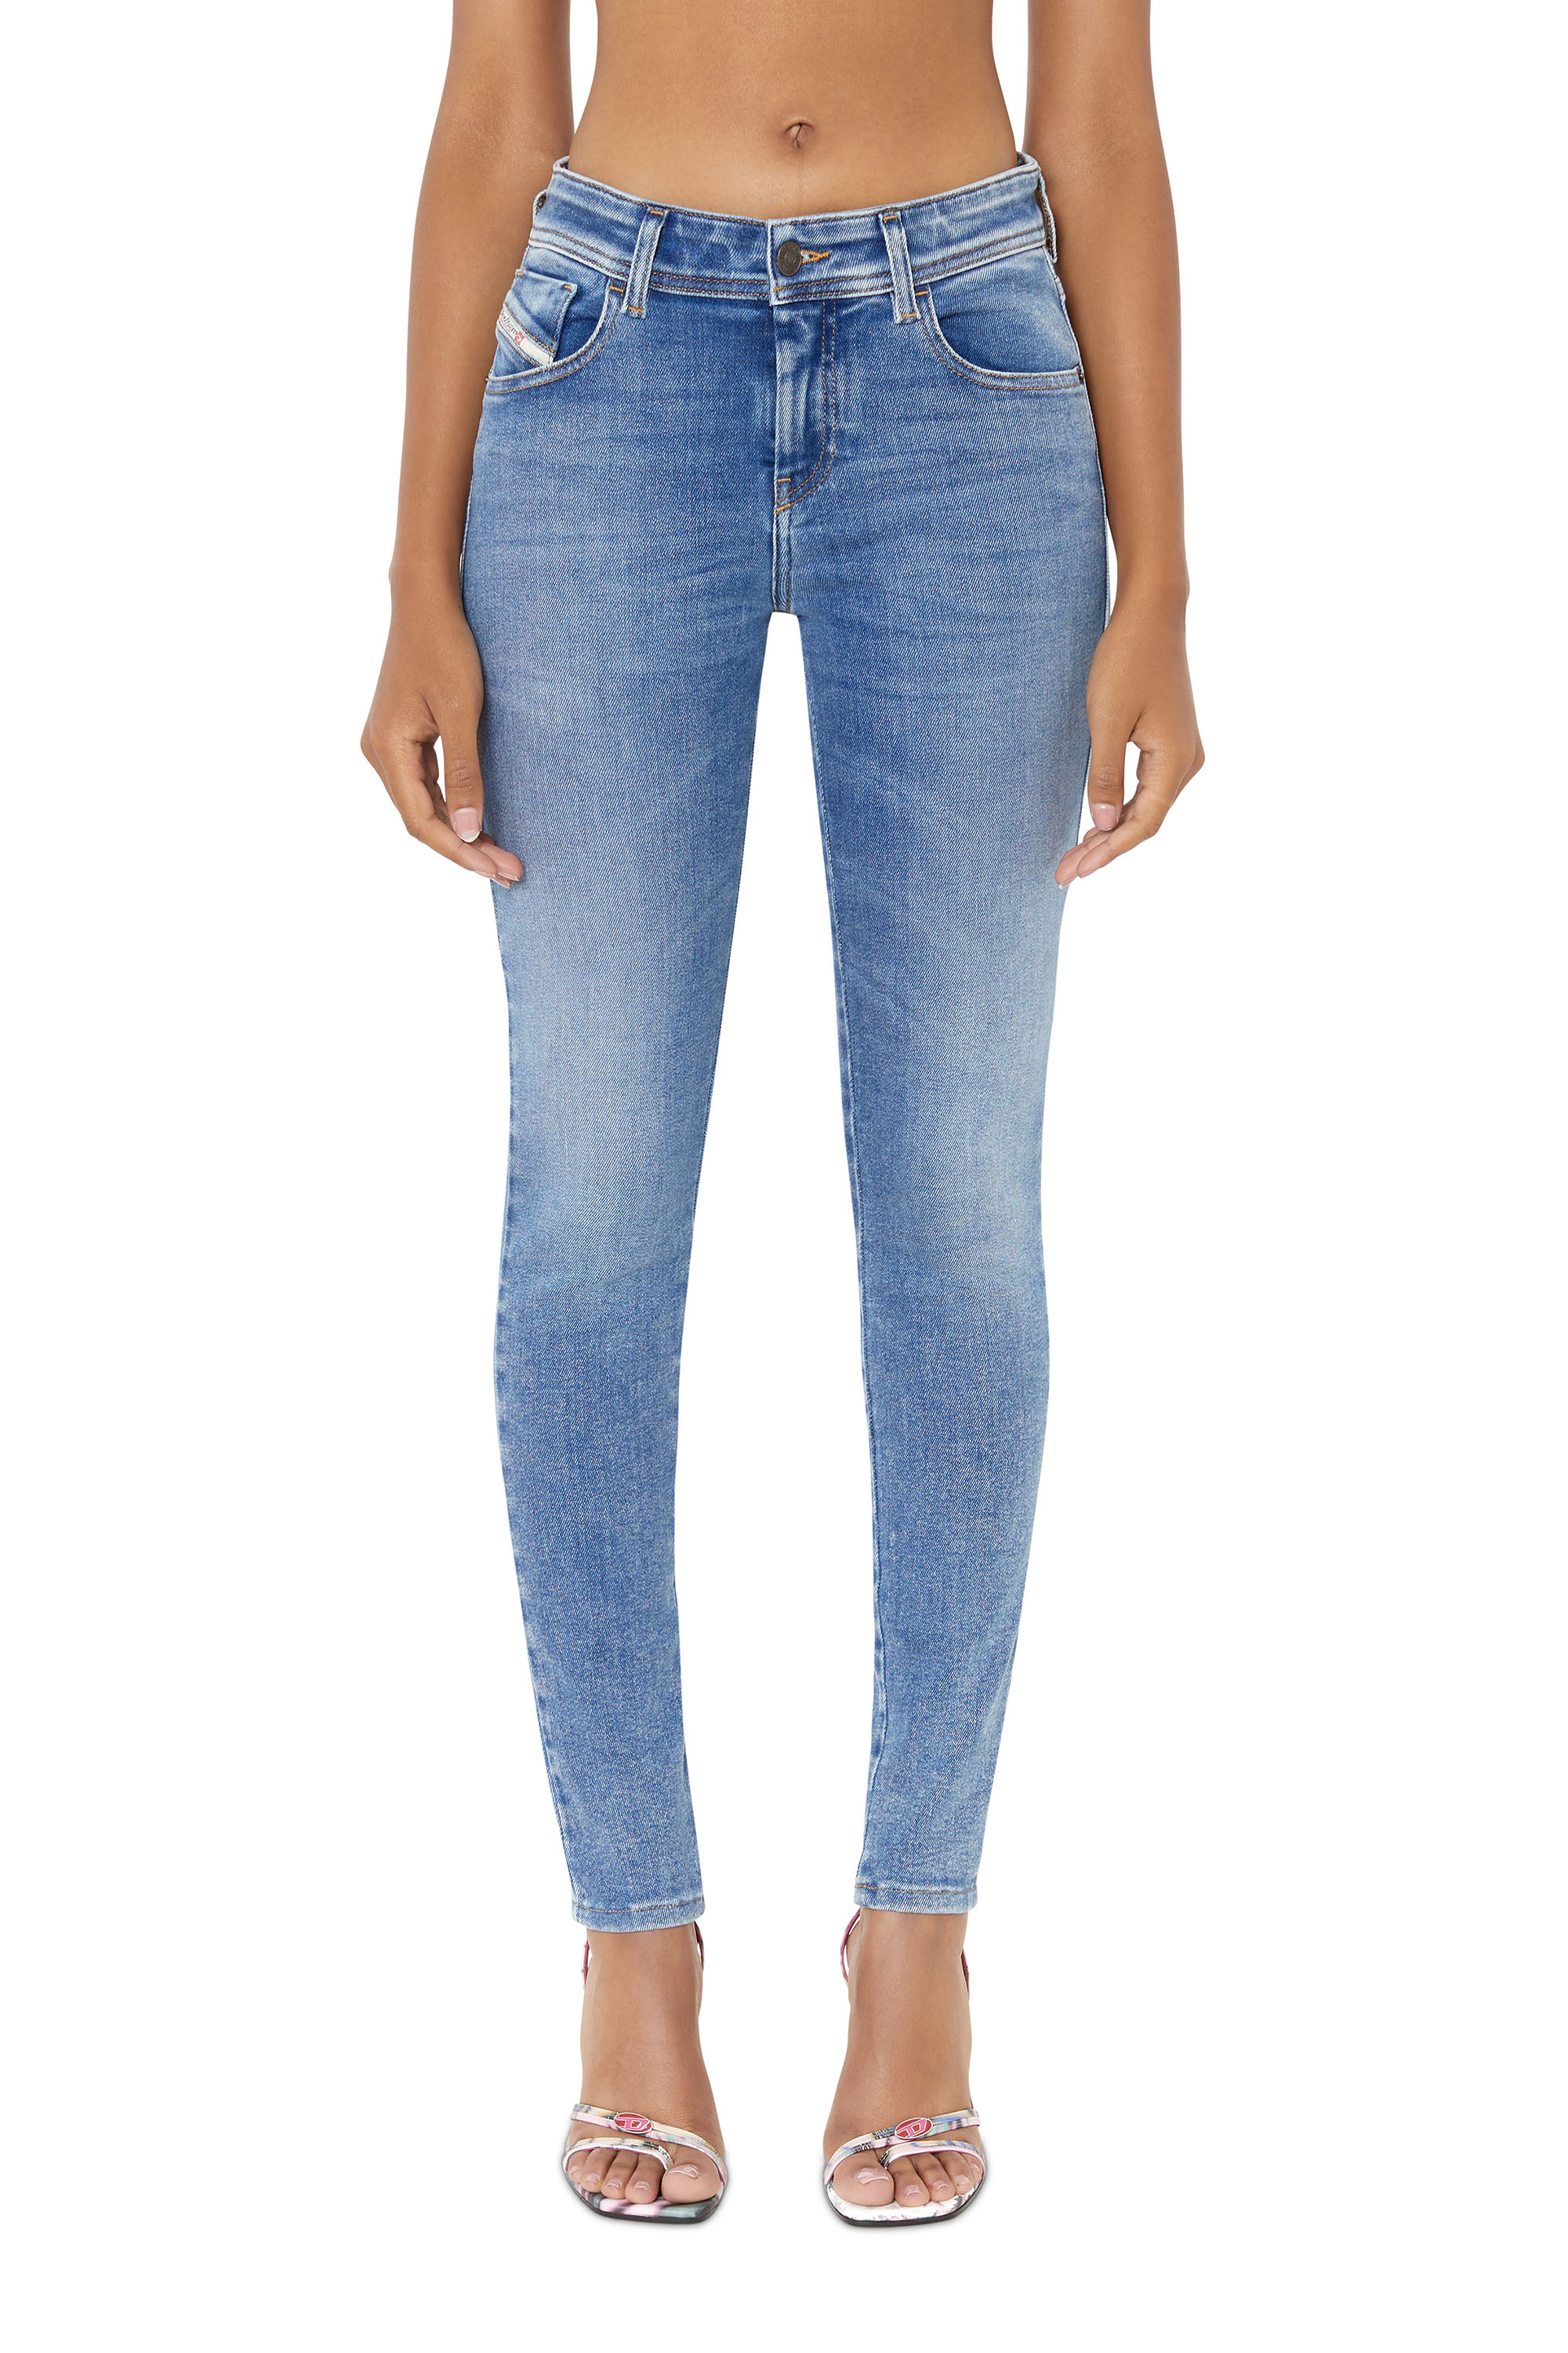 Super skinny Jeans 2017 Slandy 09D62, Azul medio - Vaqueros